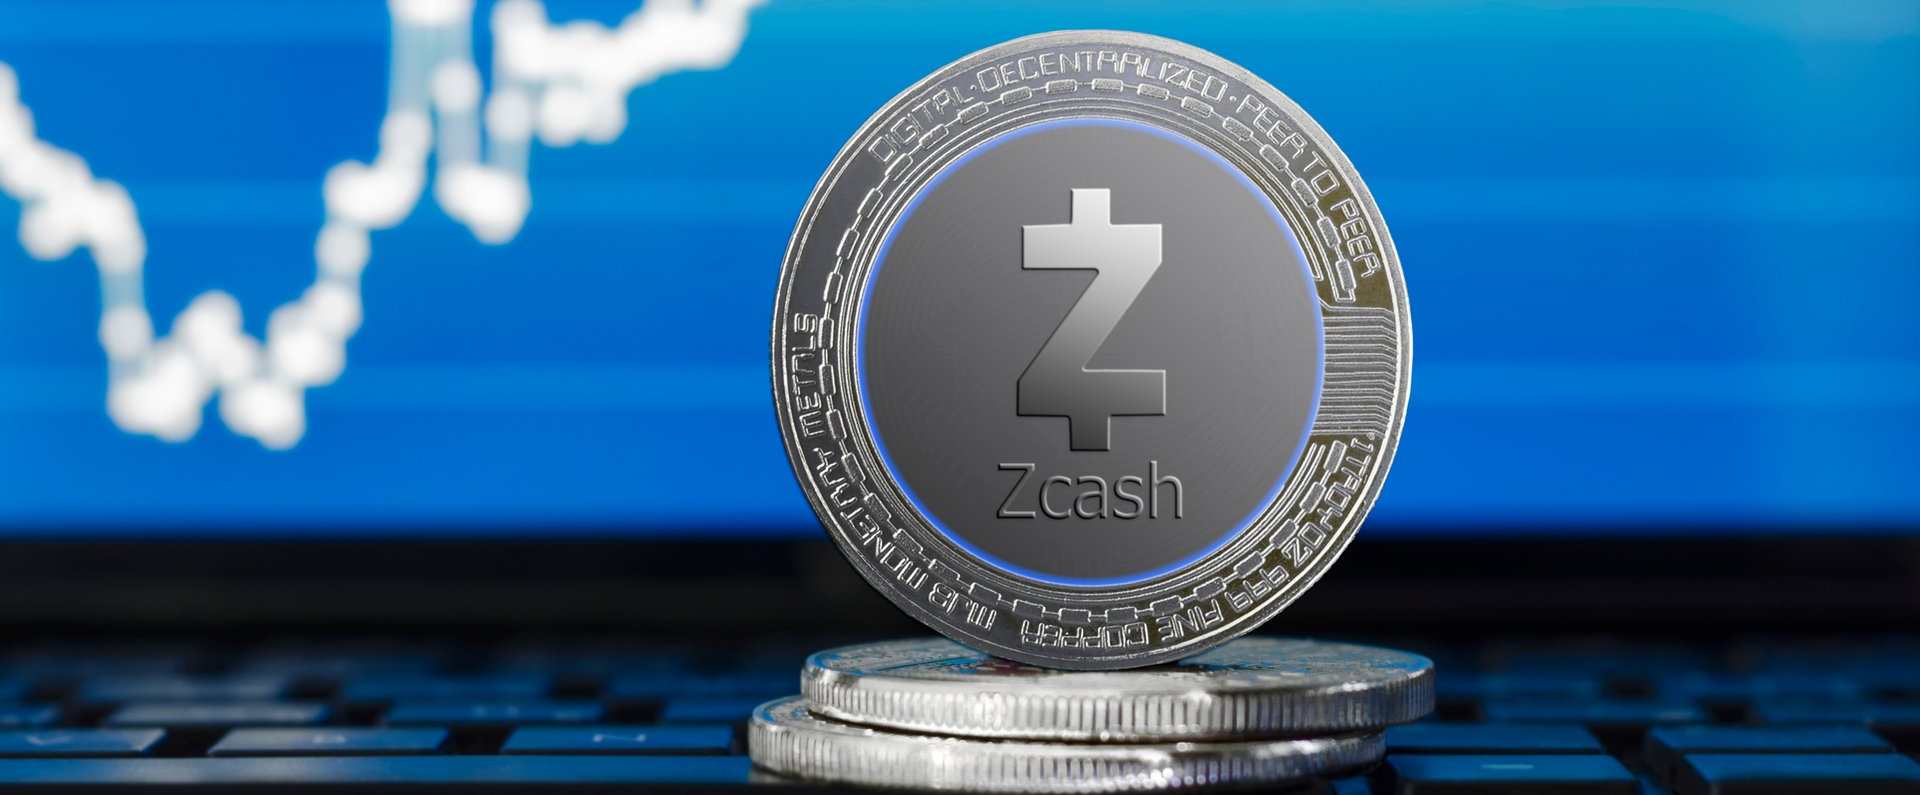 Криптовалюта Zcash (ZEC): купить, продать, обменять